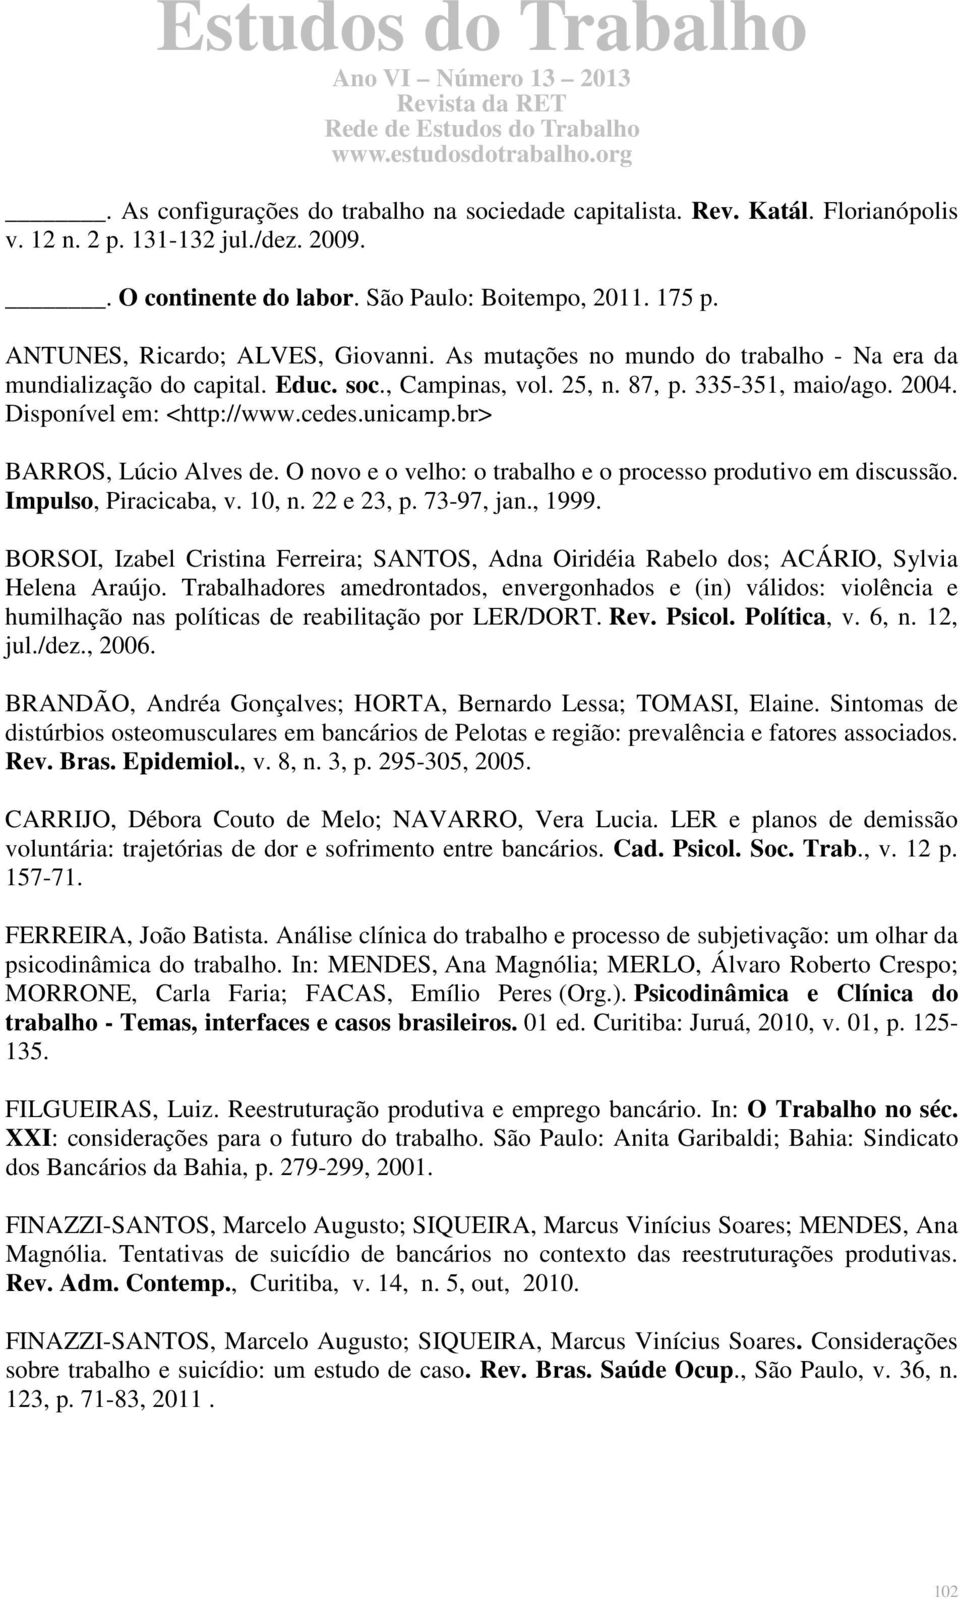 cedes.unicamp.br> BARROS, Lúcio Alves de. O novo e o velho: o trabalho e o processo produtivo em discussão. Impulso, Piracicaba, v. 10, n. 22 e 23, p. 73-97, jan., 1999.